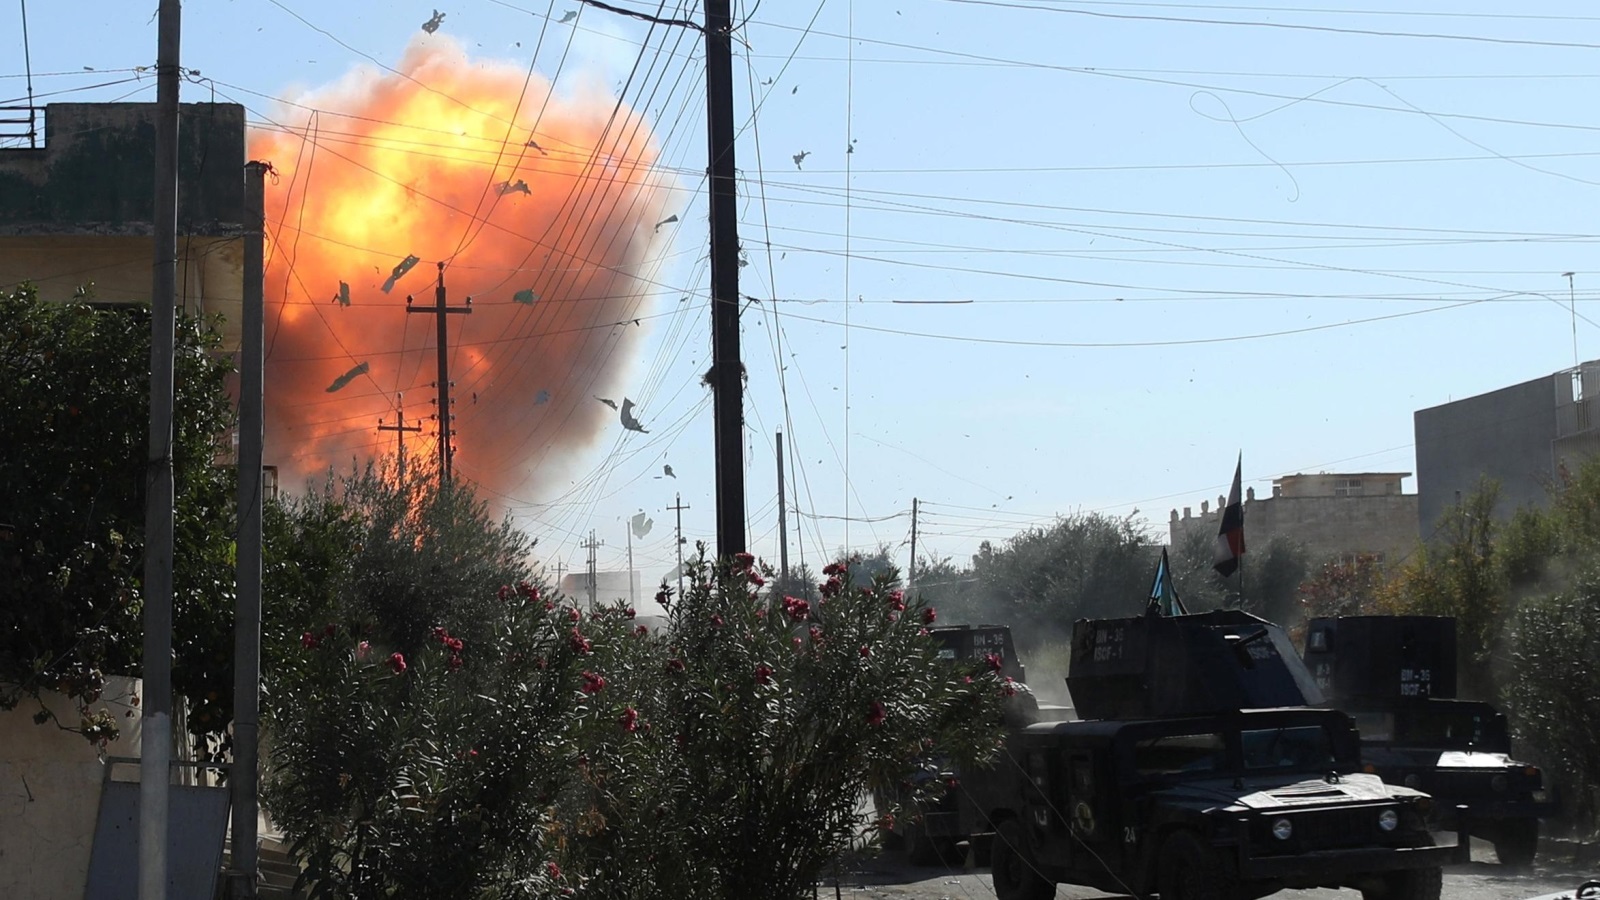 ‪هجوم بسيارة ملغمة استهدف في وقت سابق القوات العراقية شرقي الموصل (رويترز)‬ هجوم بسيارة ملغمة استهدف في وقت سابق القوات العراقية شرقي الموصل (رويترز) 